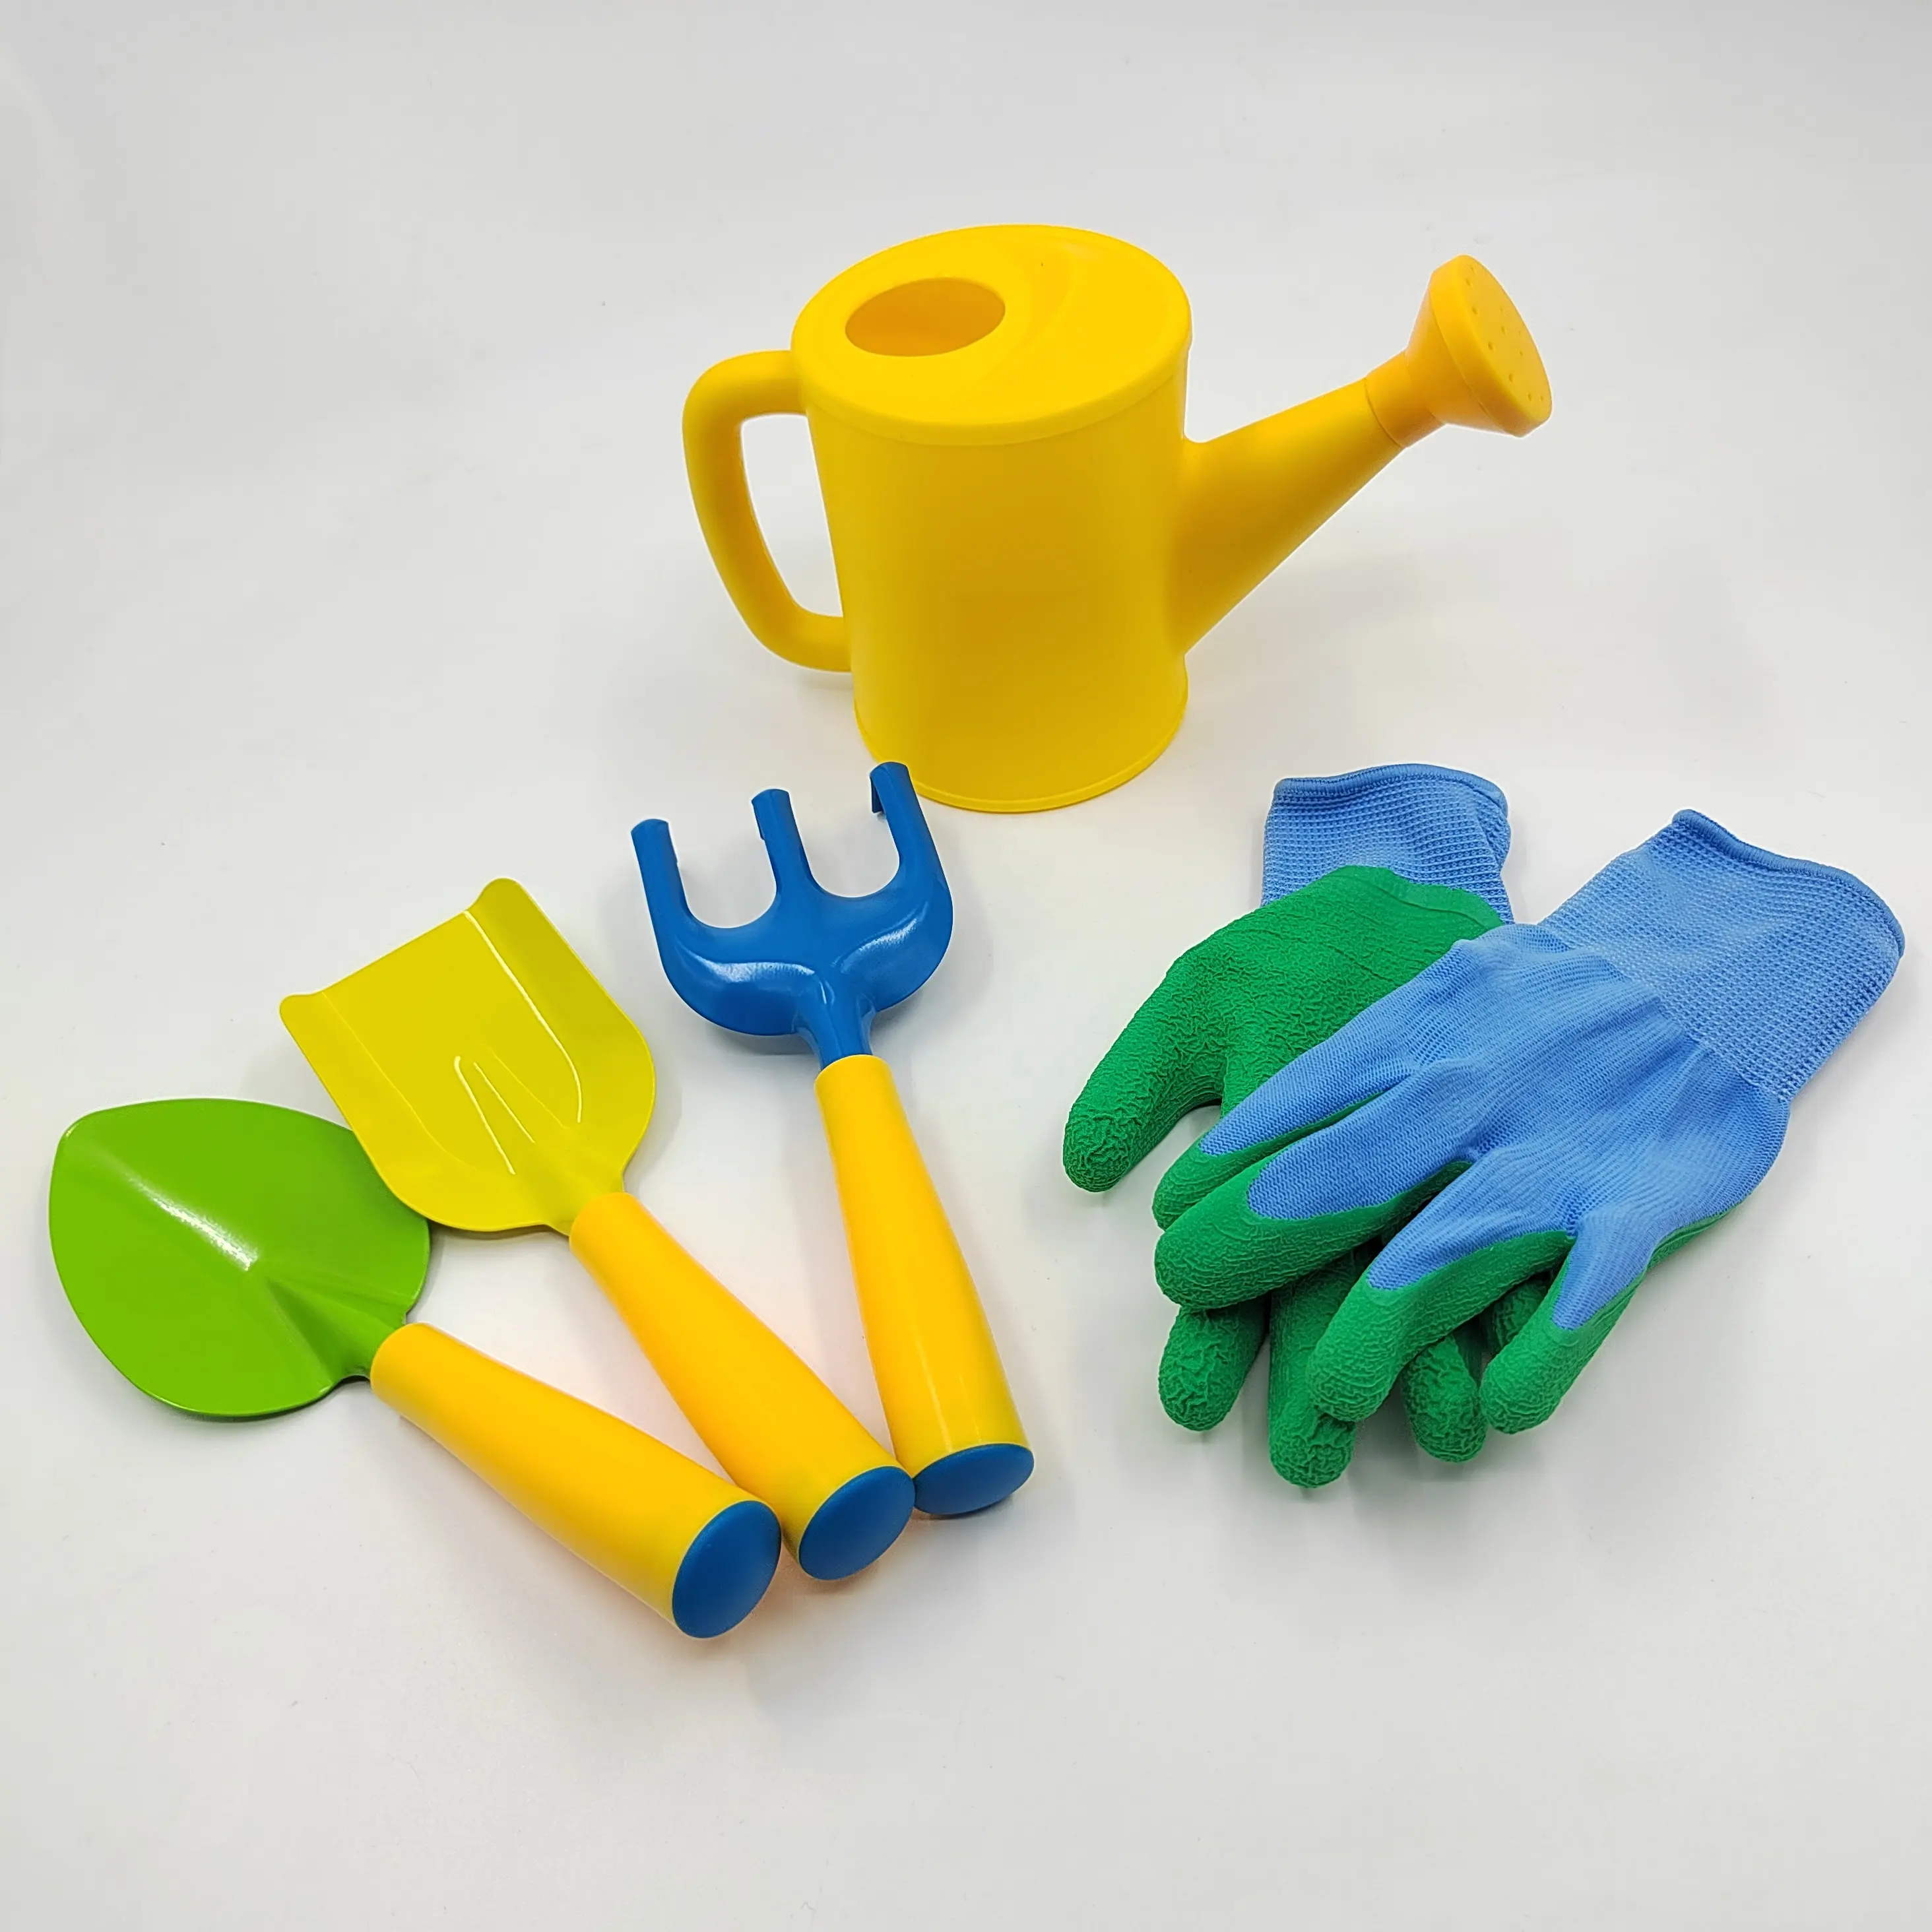 Хорошее качество, настоящая детская садовые инструменты набор с металлической головкой и пластиковой ручкой отлично подходит для детей в подарок